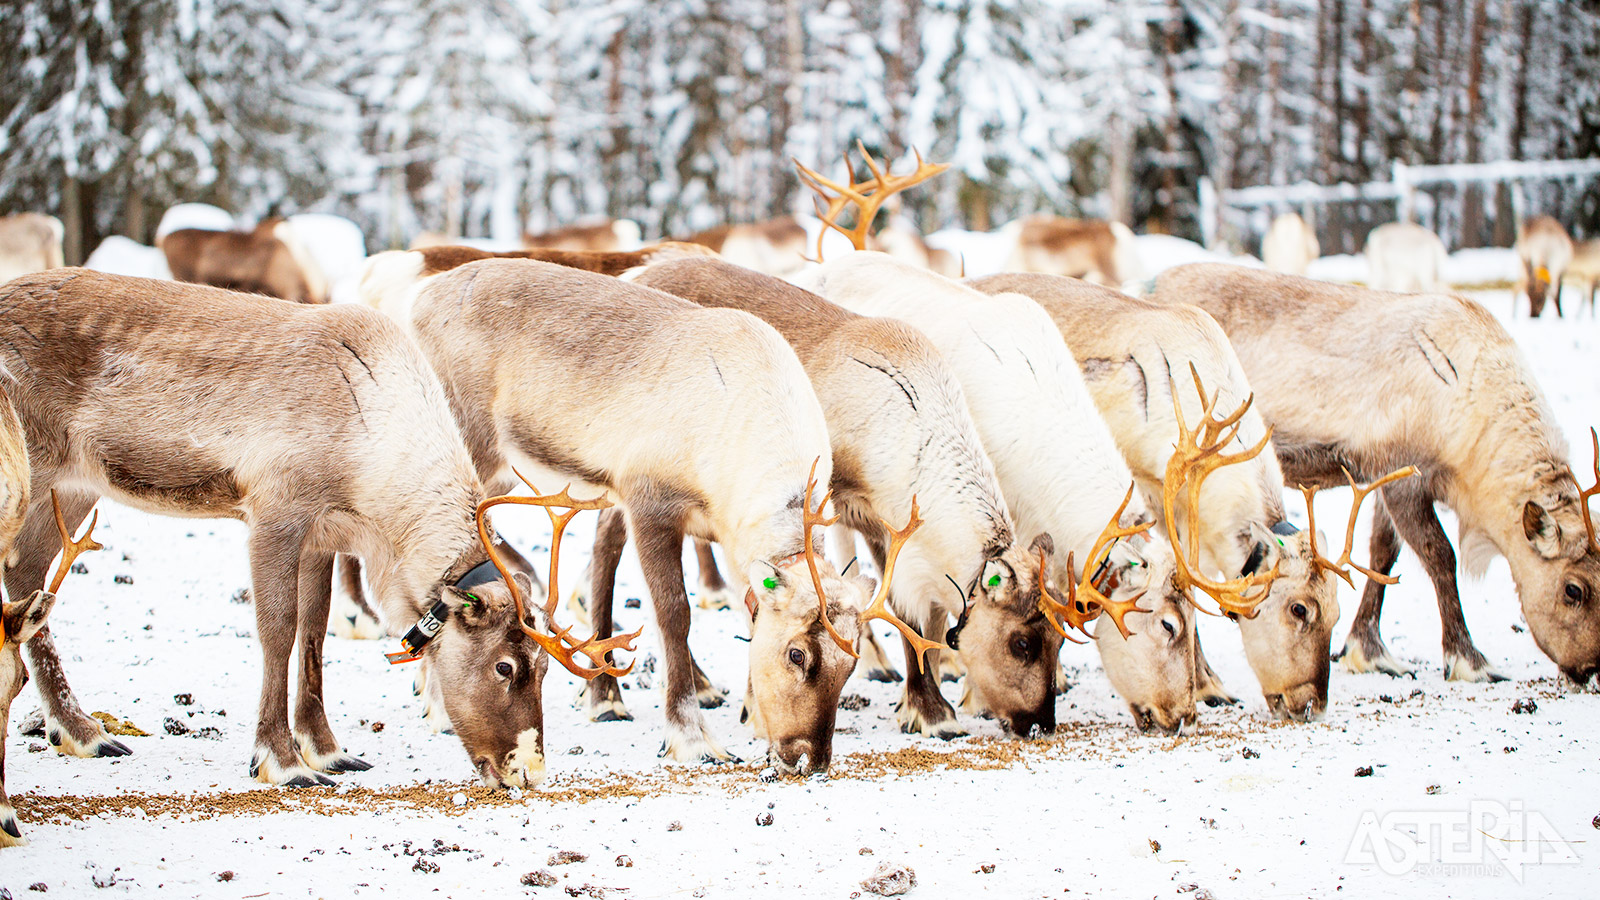 Op de rendierboerderij luister naar de verhalen van de Sámi en verneem je meer over de eeuwenoude band tussen mens en dier